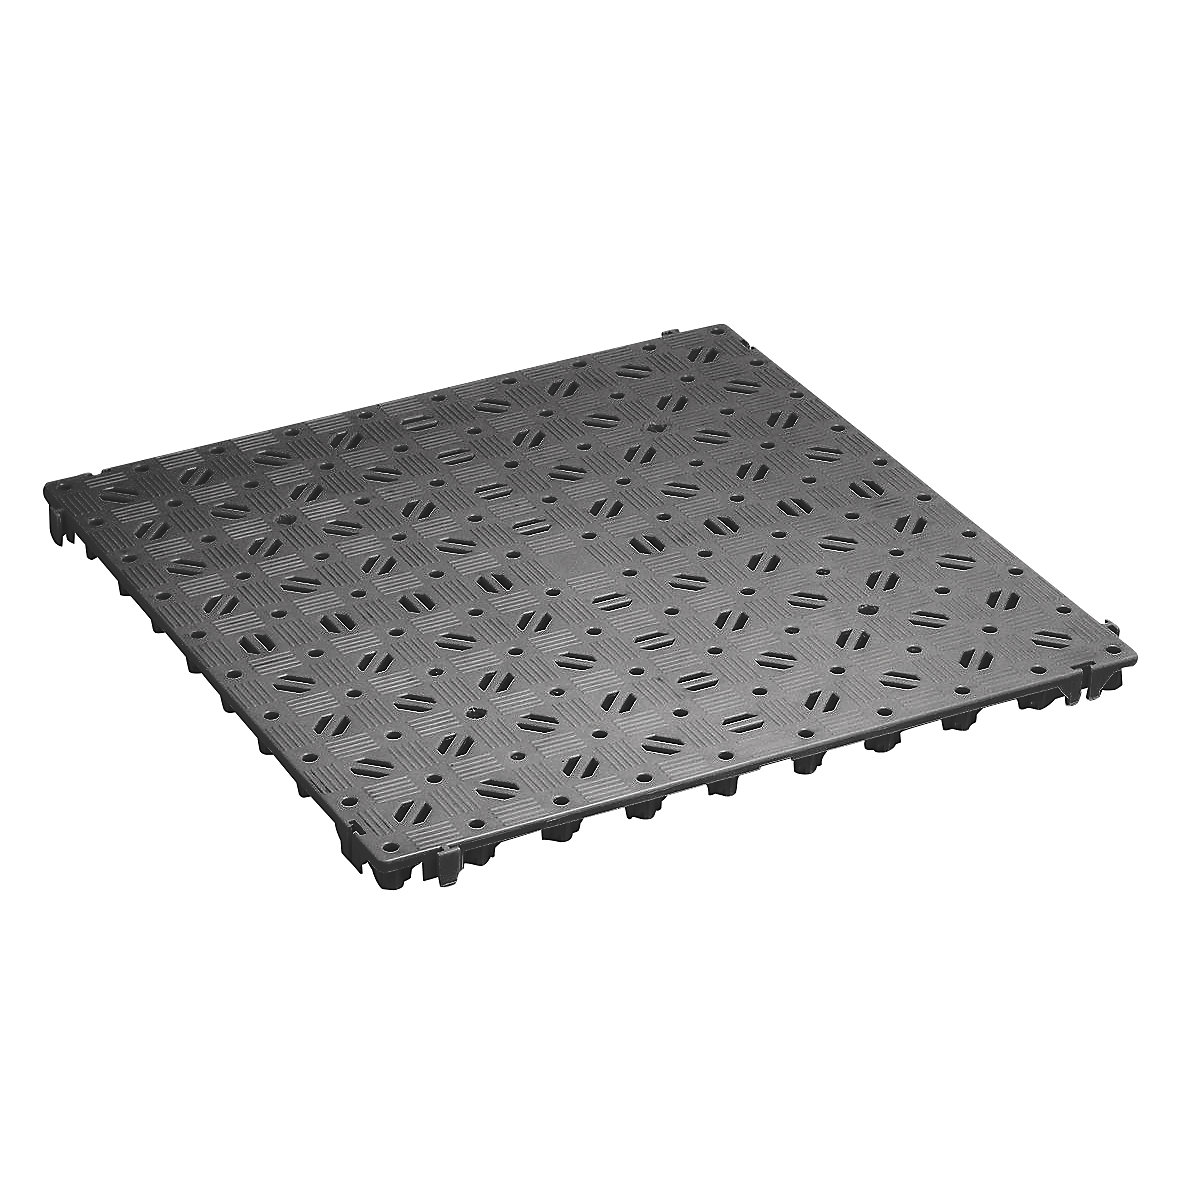 Plastic floor tile, polyethylene, 500 x 500 mm, stable, pack of 20, basalt grey